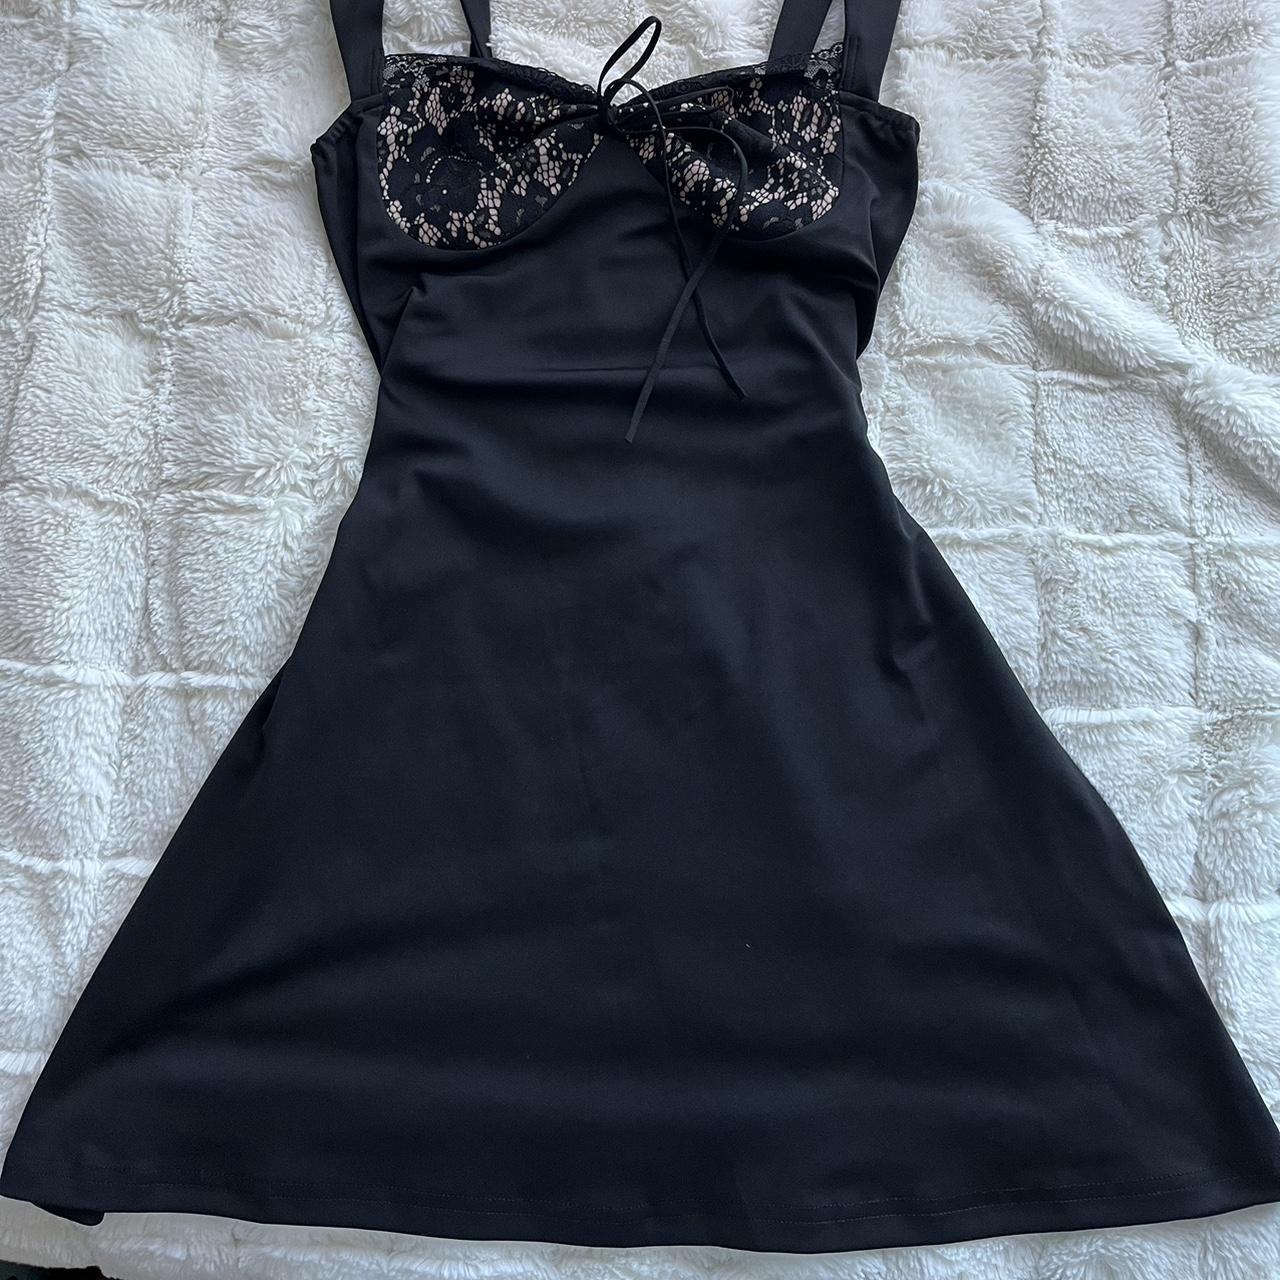 Black lace mini dress - super cute never worn -... - Depop